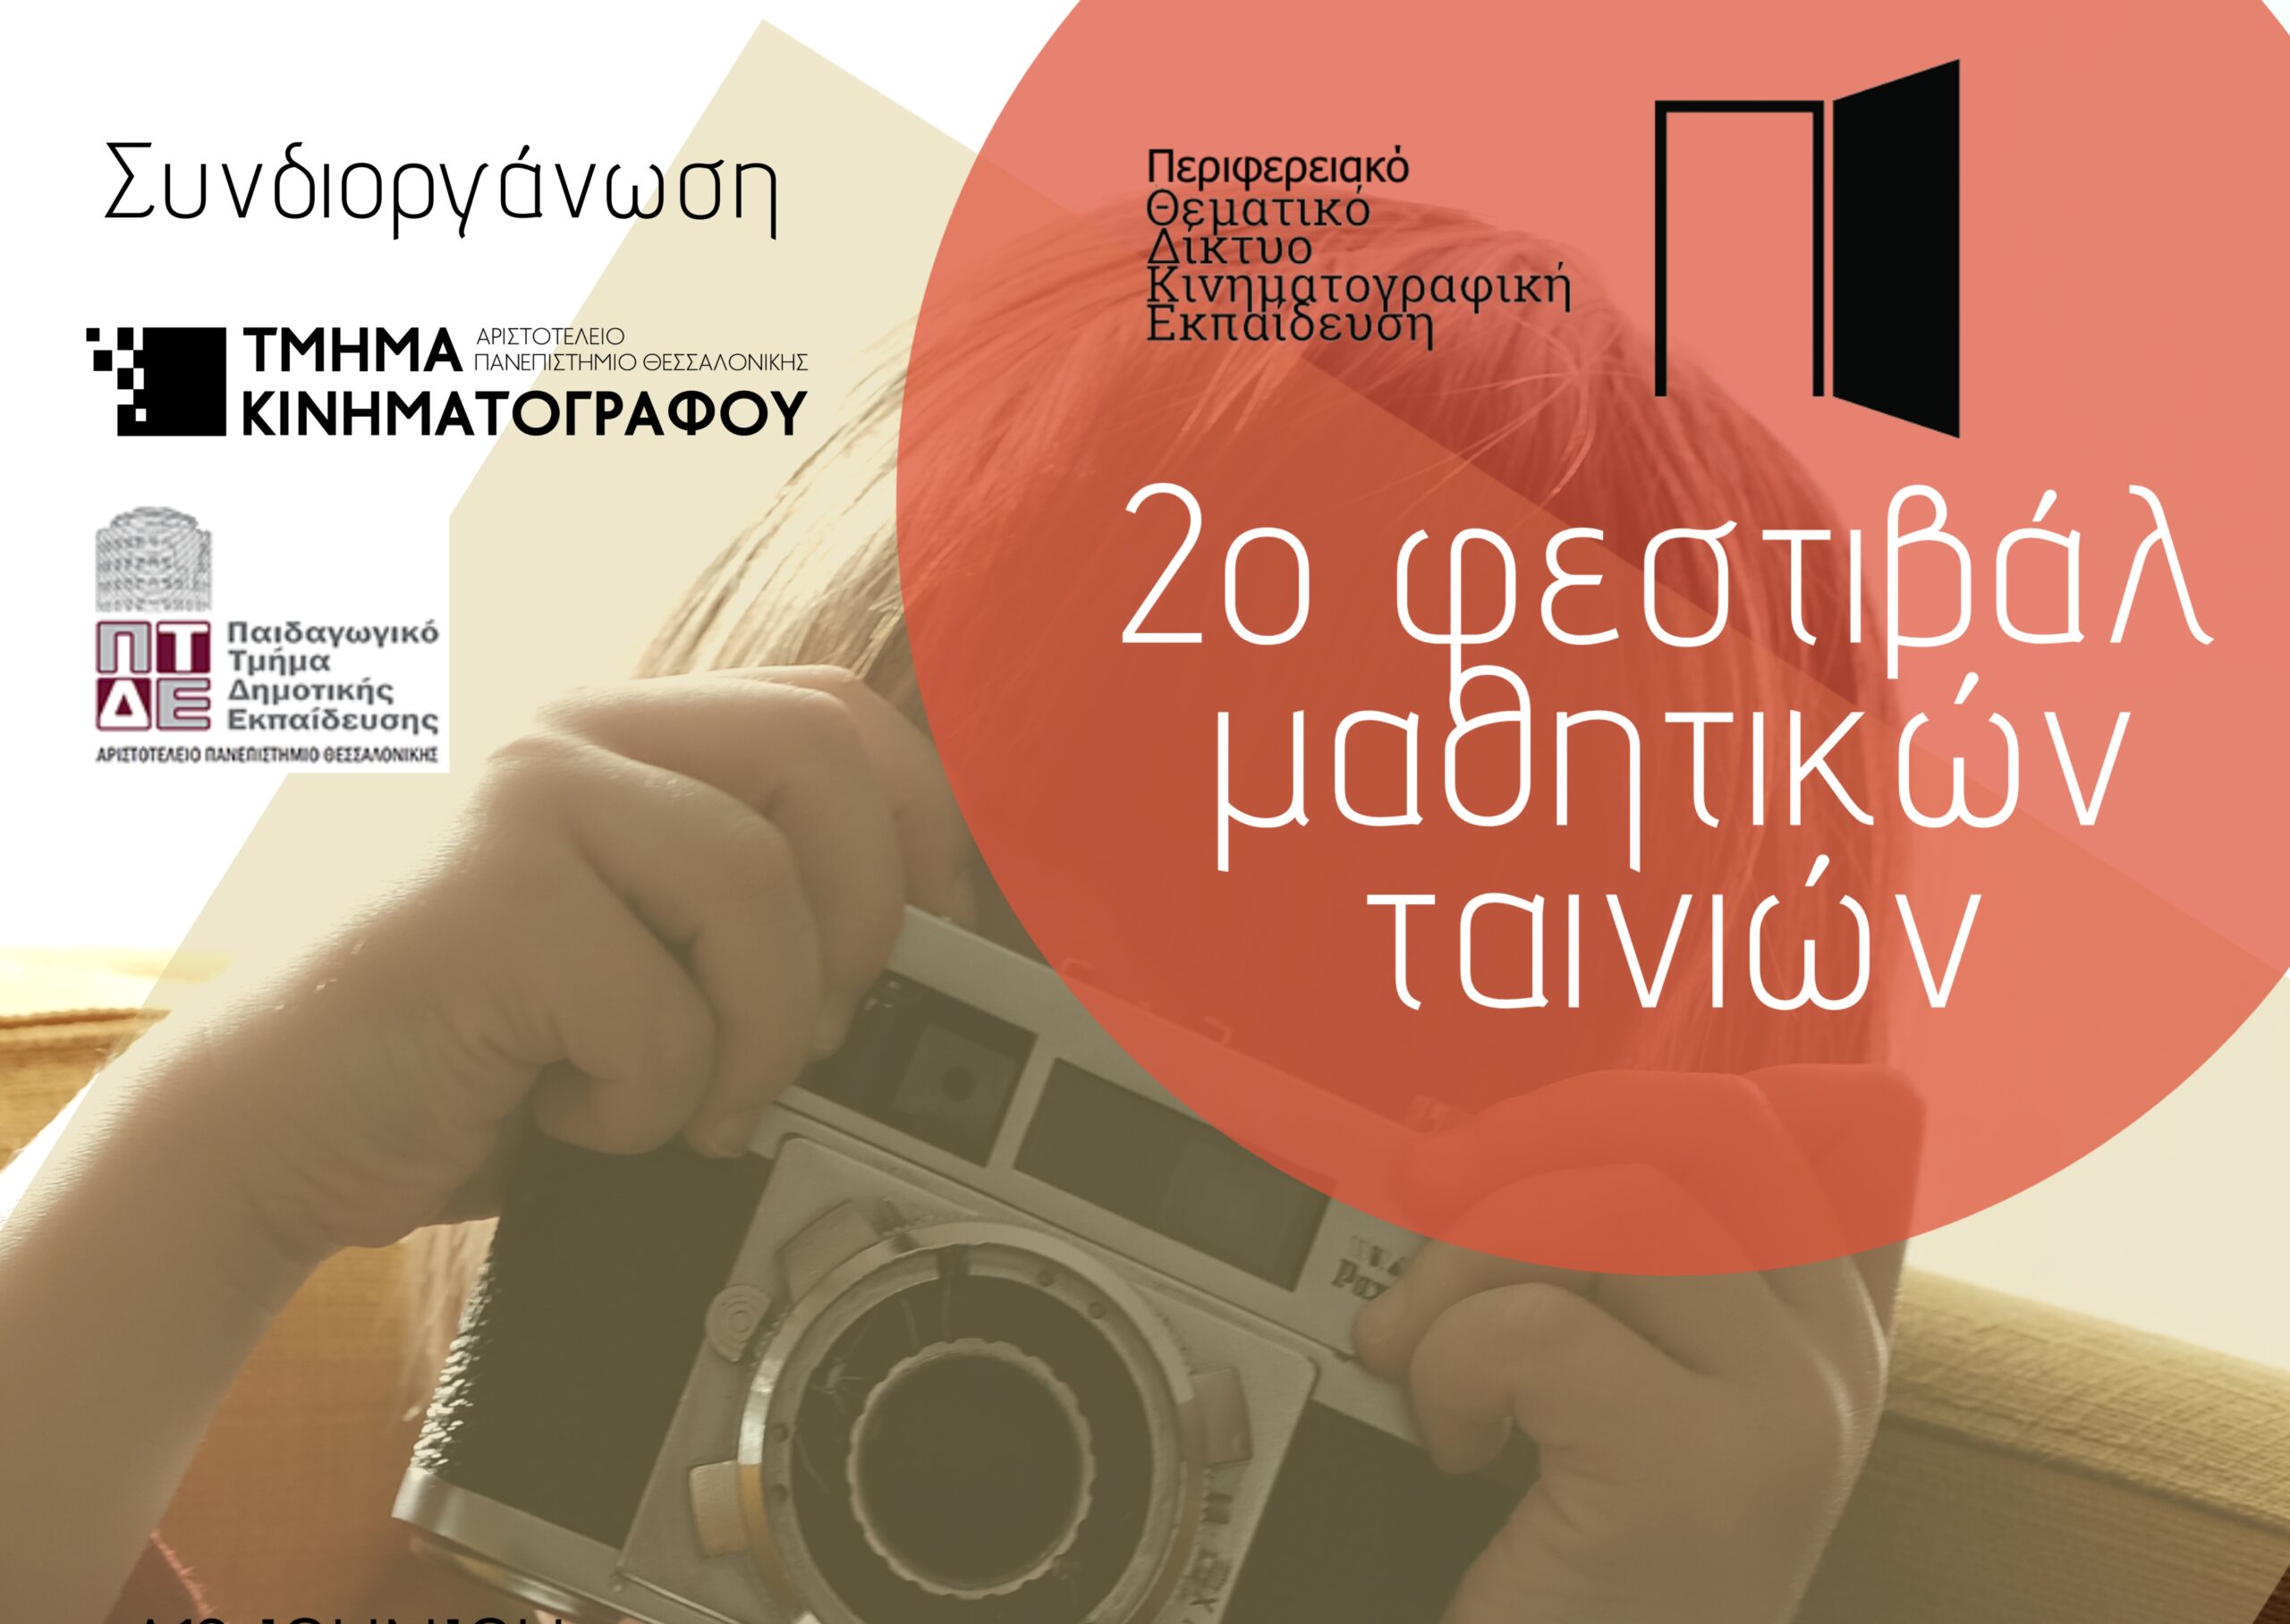 2ο Φεστιβάλ Μαθητικών Ταινιών στη Θεσσαλονίκη